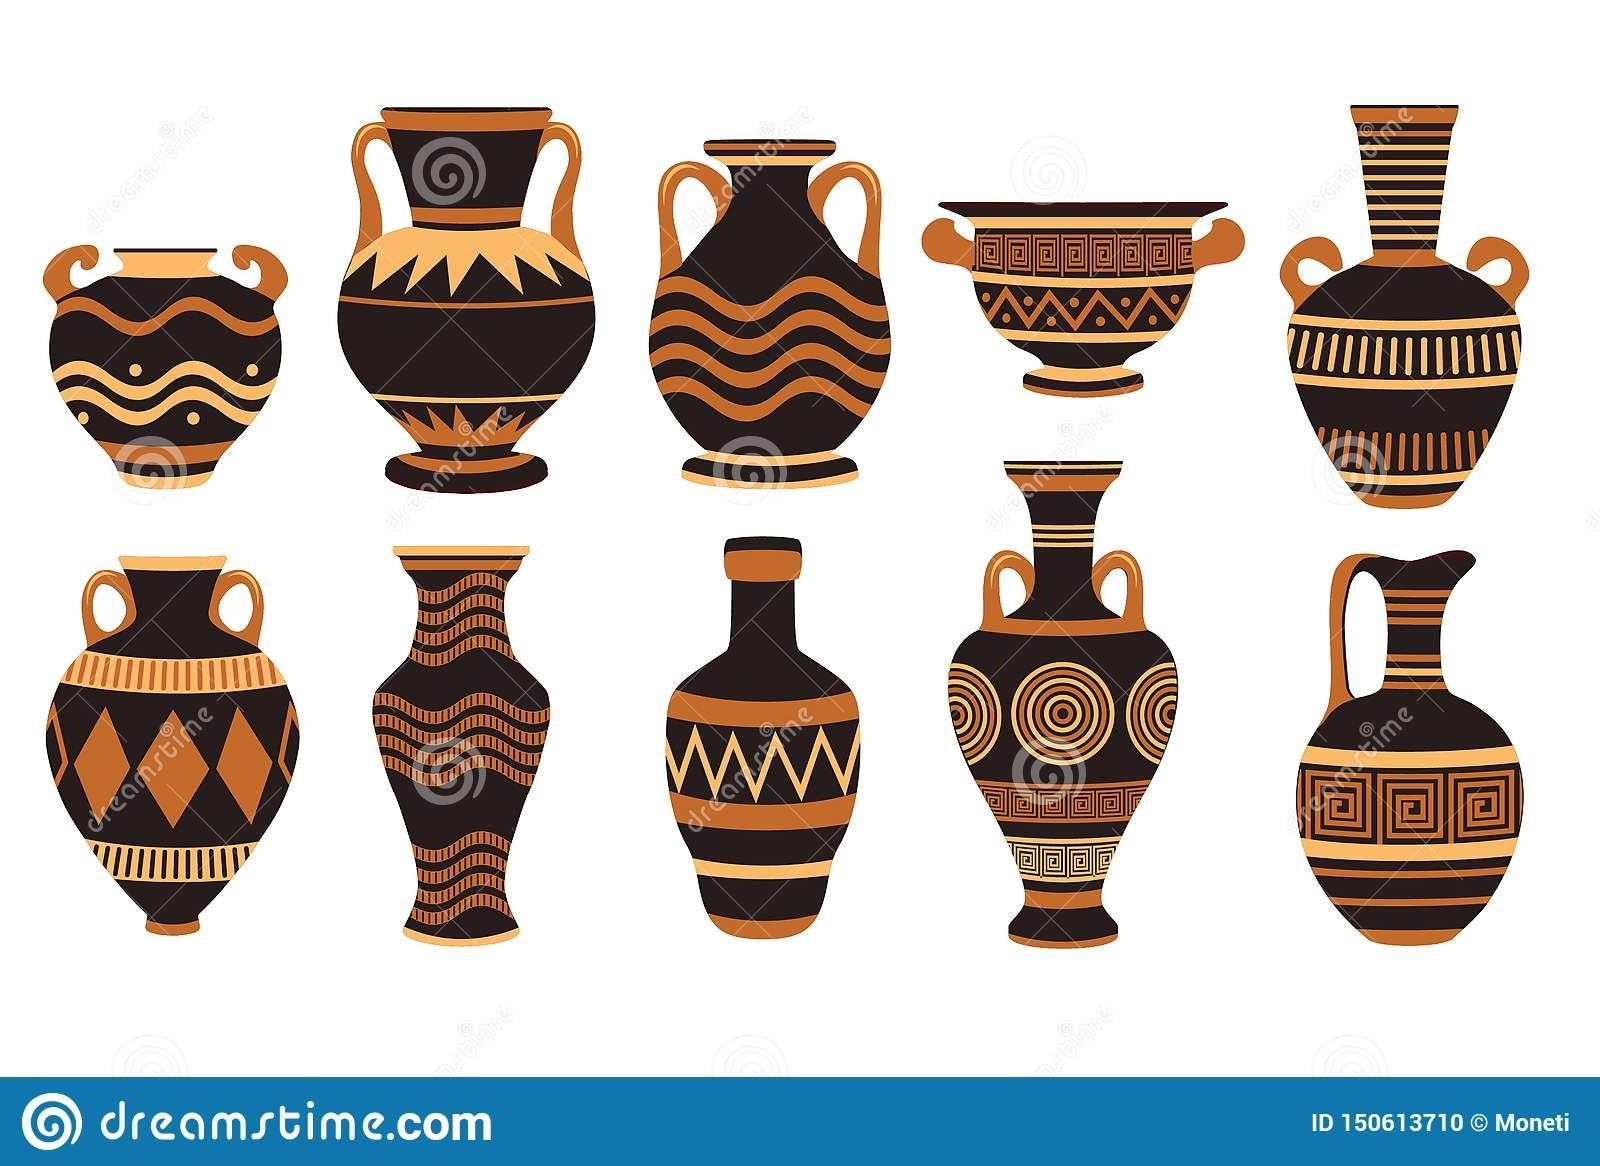 100 000 векторов и графики по запросу Греческие вазы доступны в рамках роялти-фри лицензии